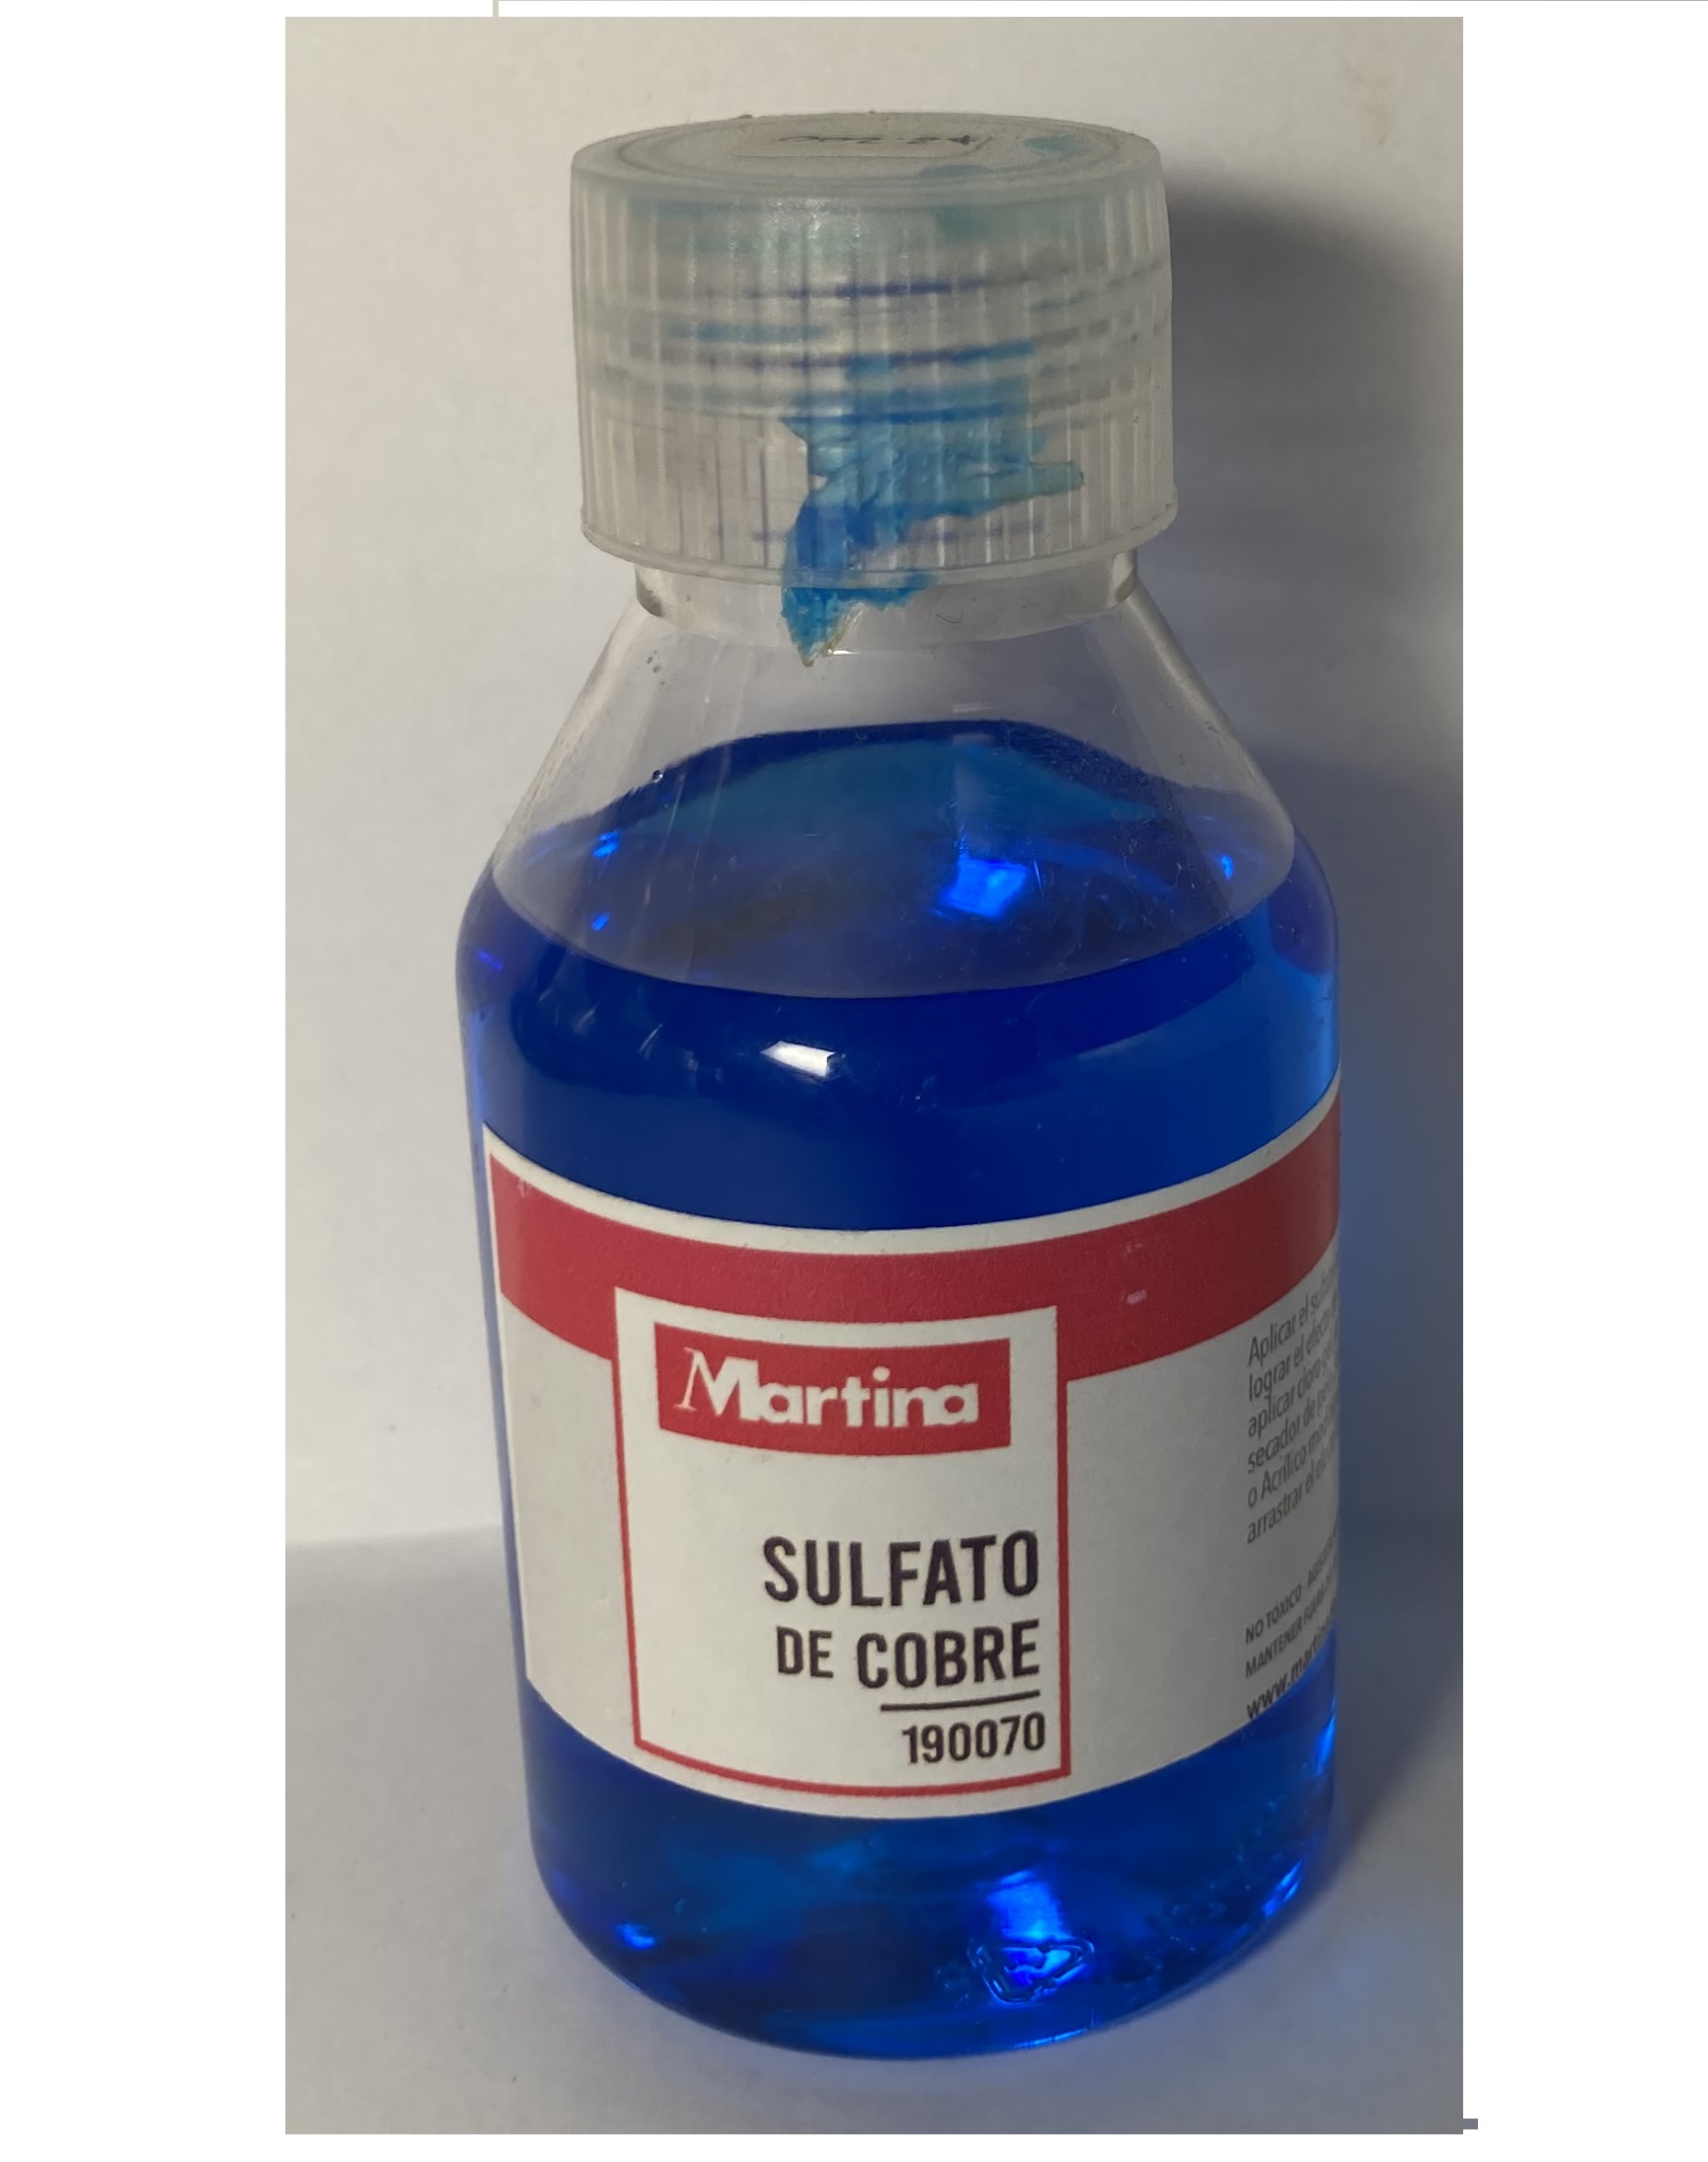 Sulfato de Cobre 100 ml. Martina - El Rincon de Matta